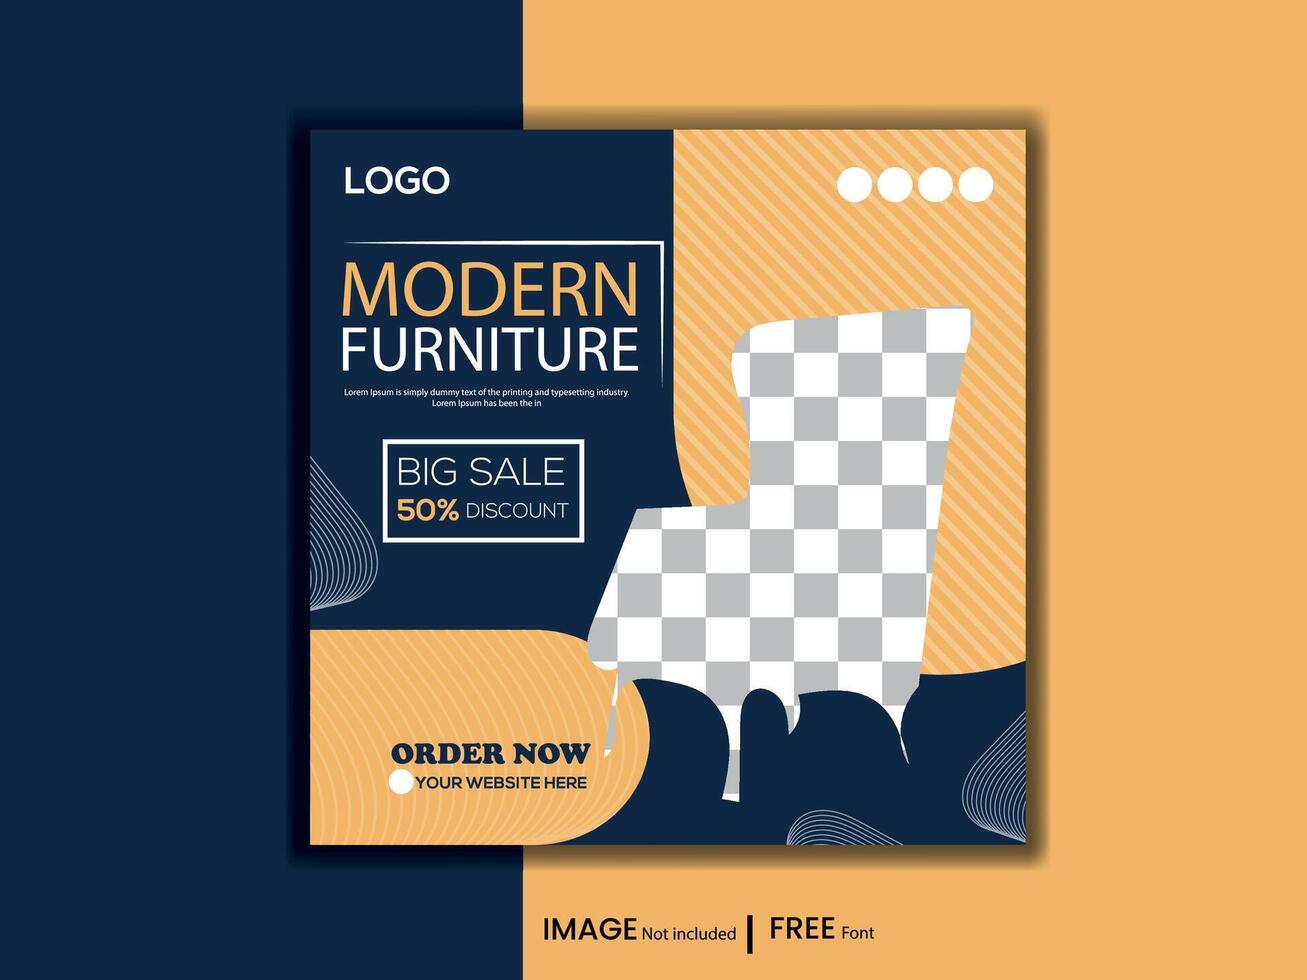 Modern Furniture For sale social media post design vector